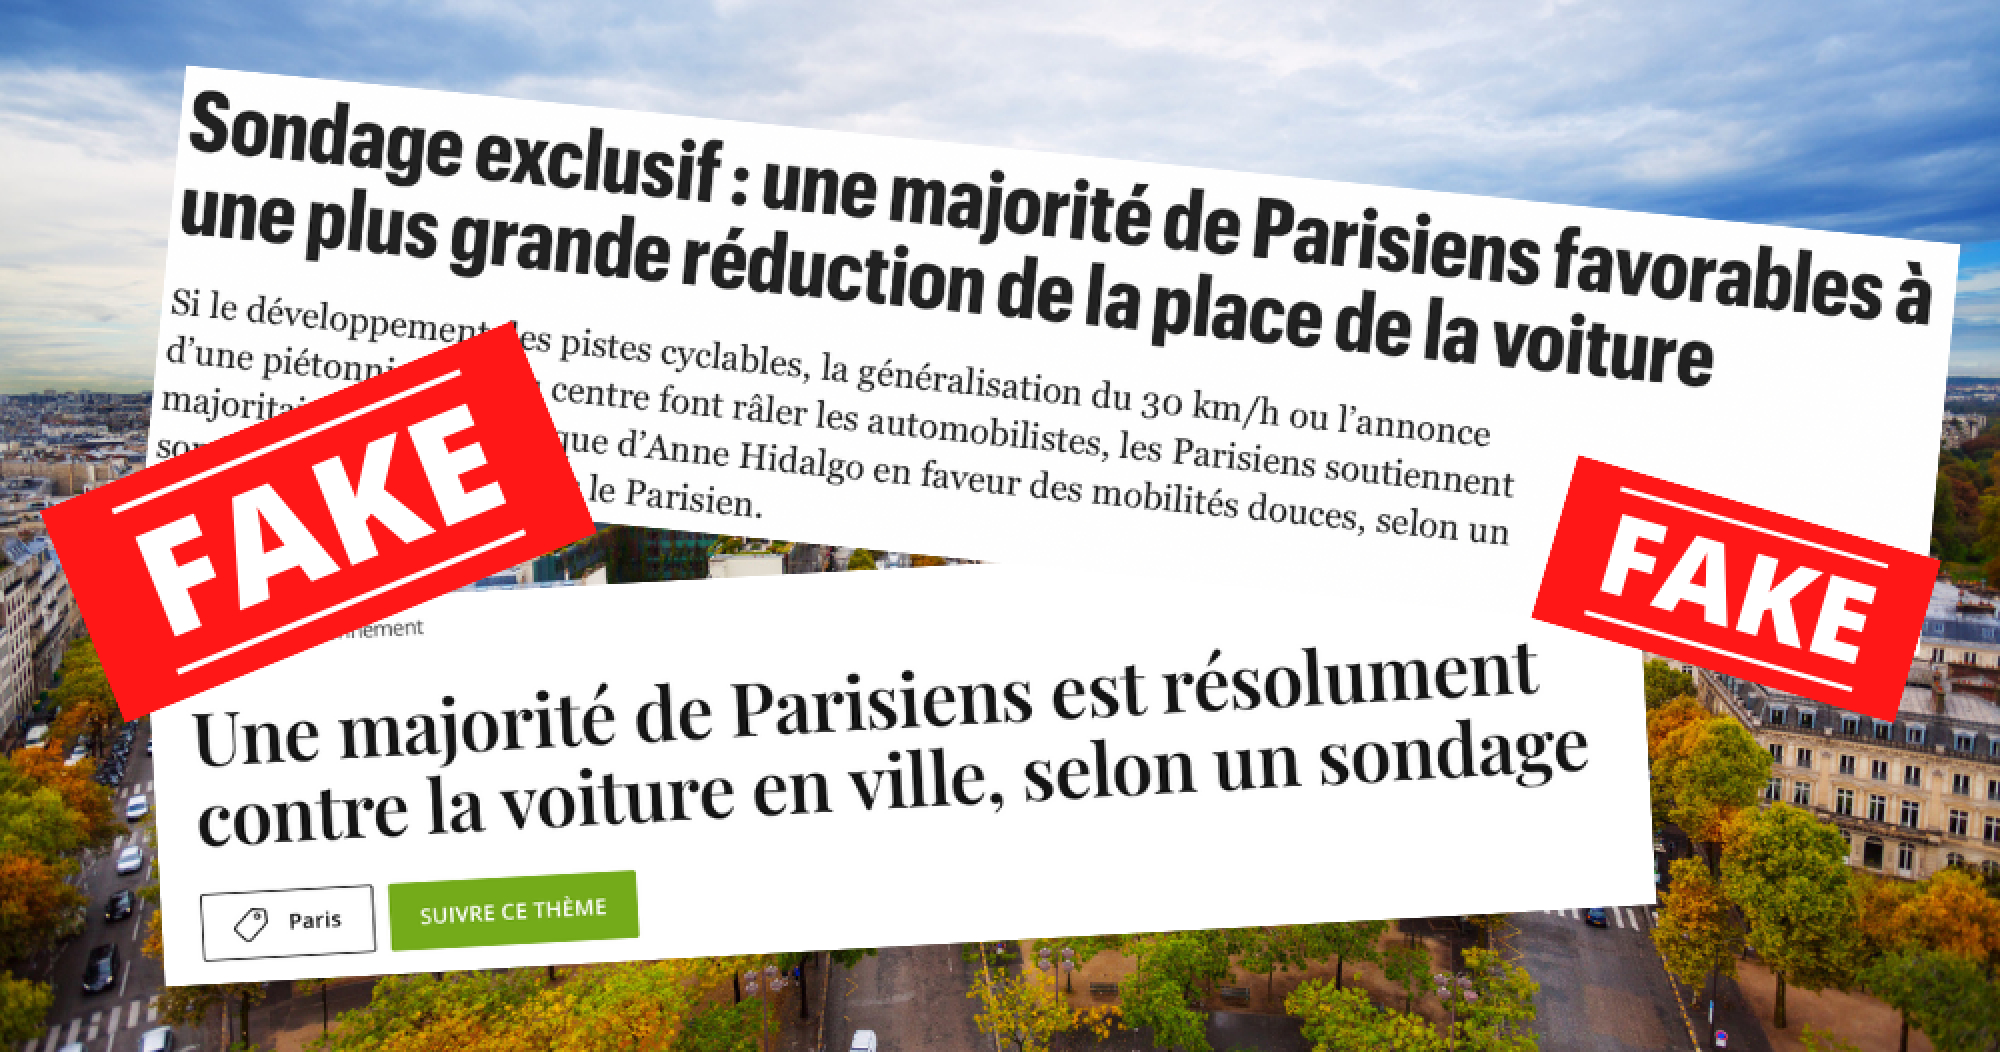 Une majorité de Parisiens favorables à davantage de réduction de la place de la voiture, vraiment ?